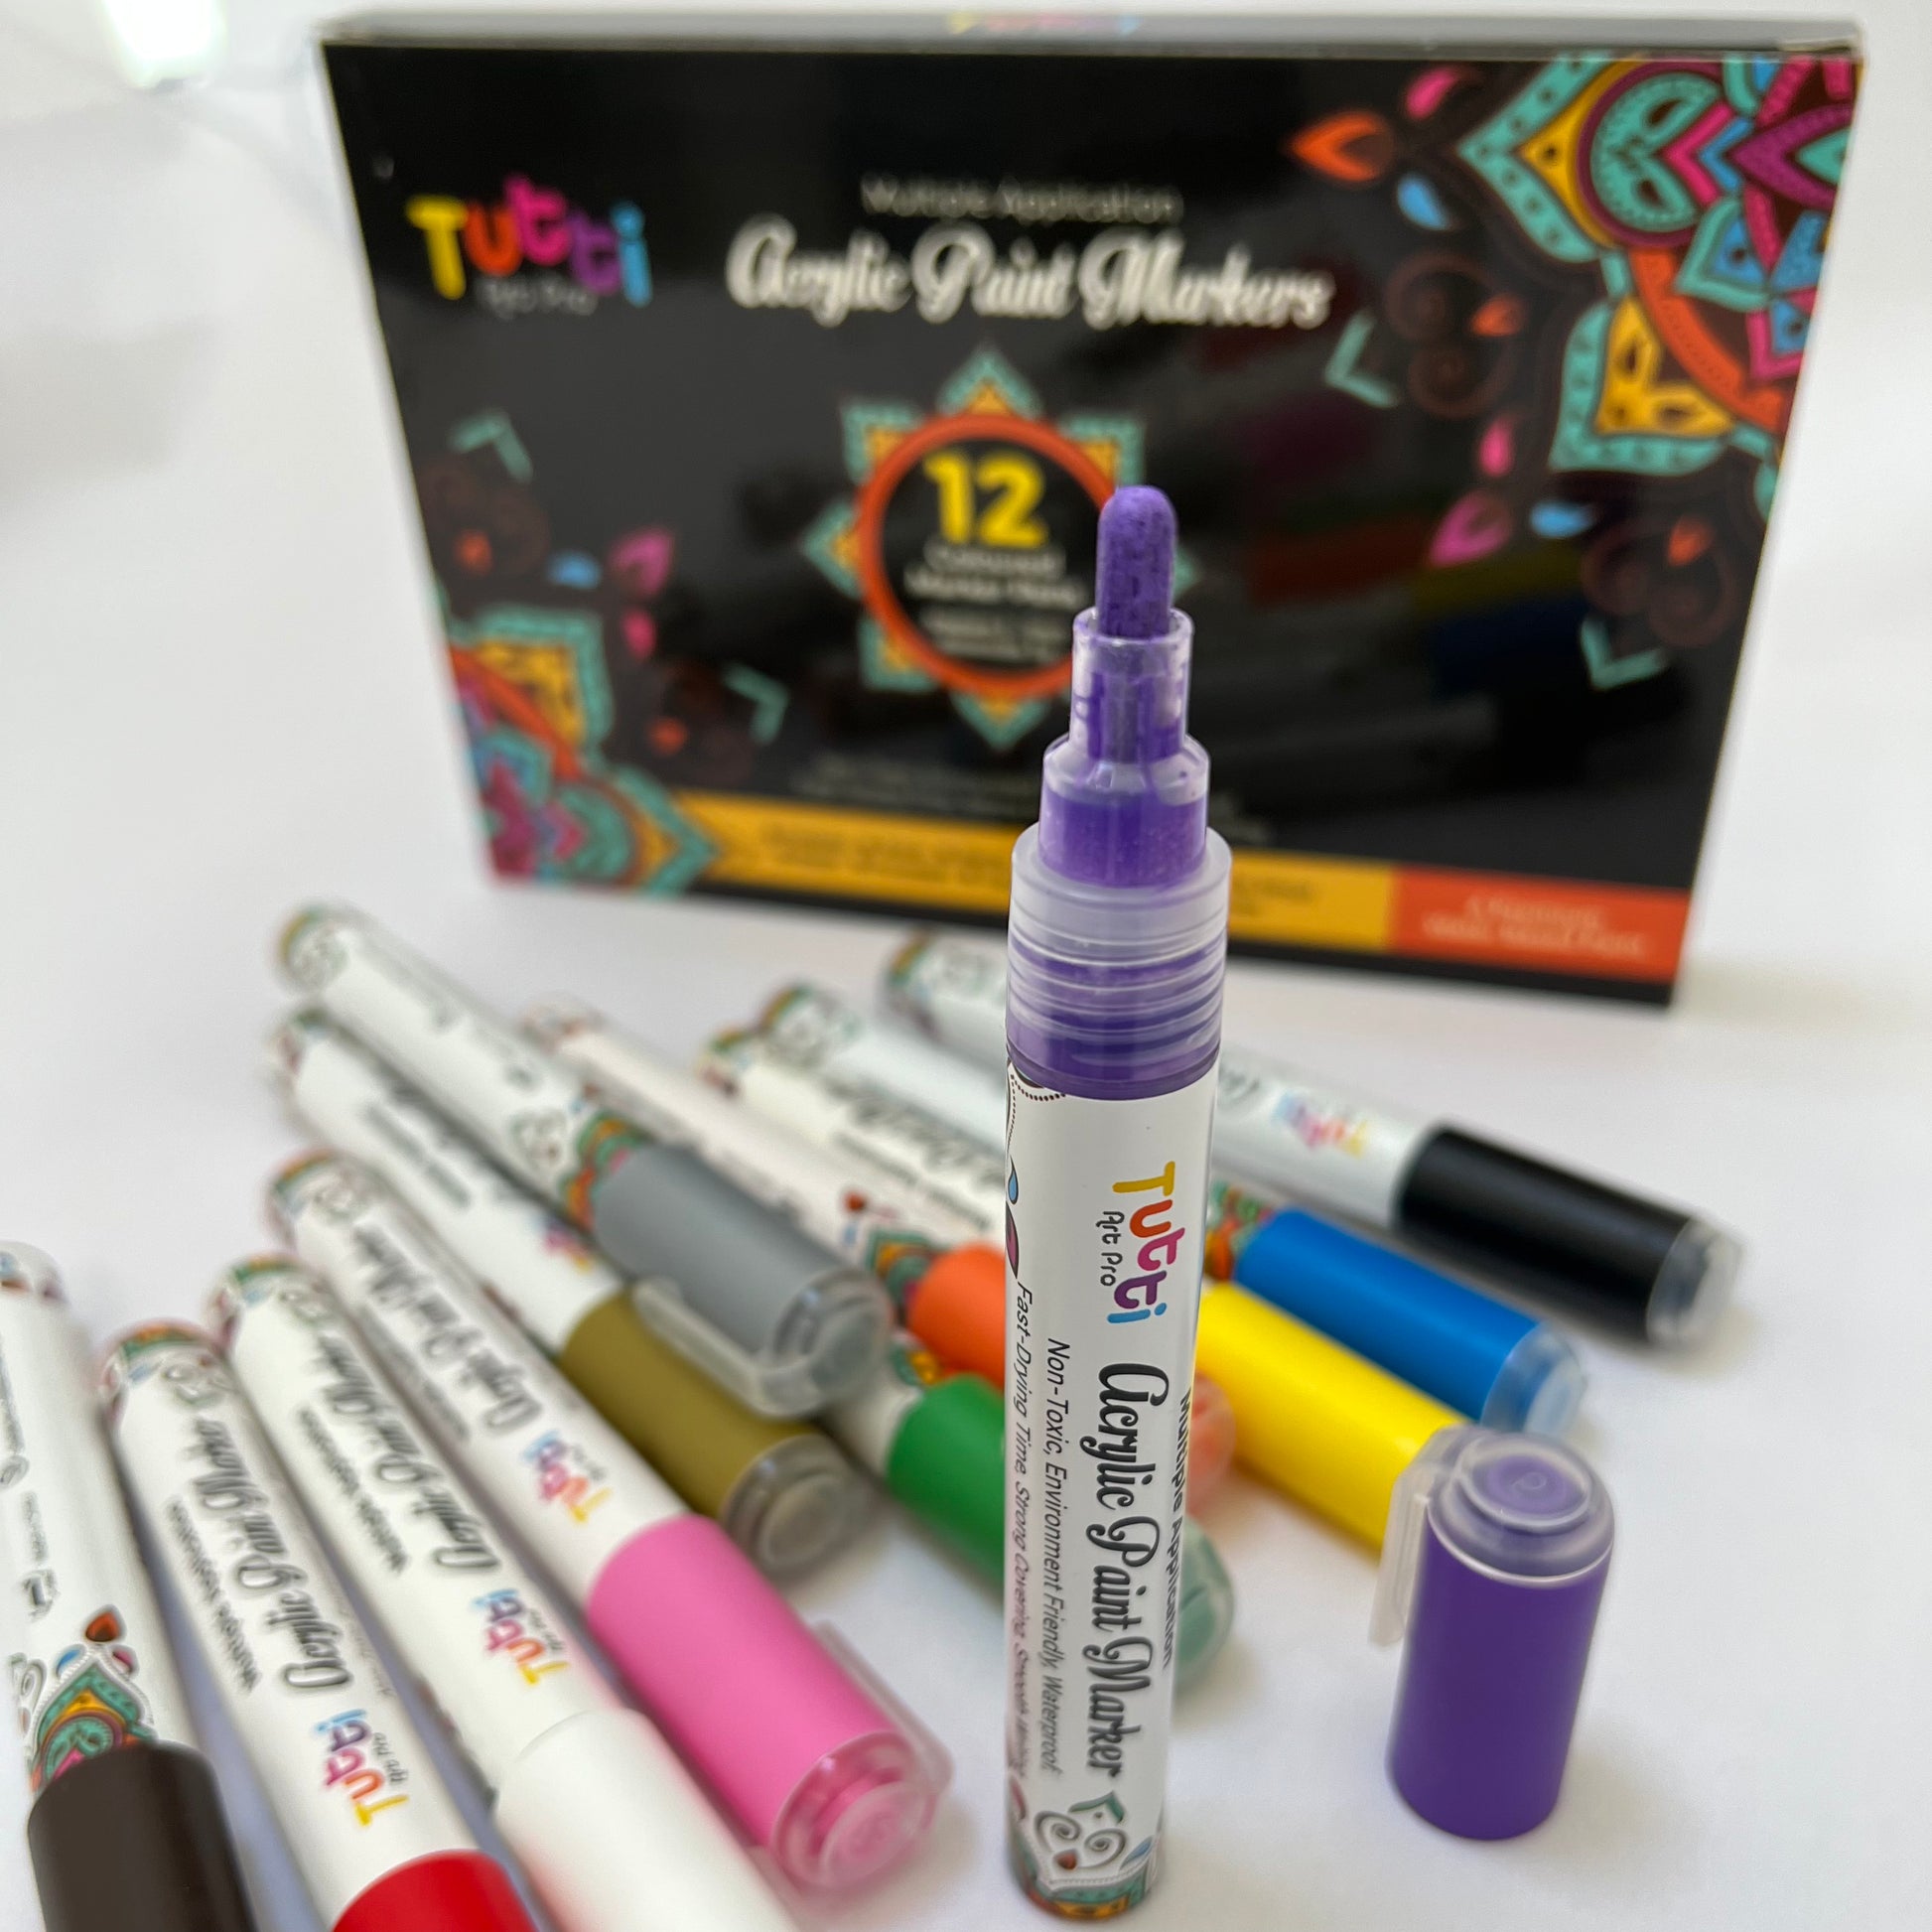 Acrylic Paint Markers Set of 12 - Premium Multi Surface Paint Pen